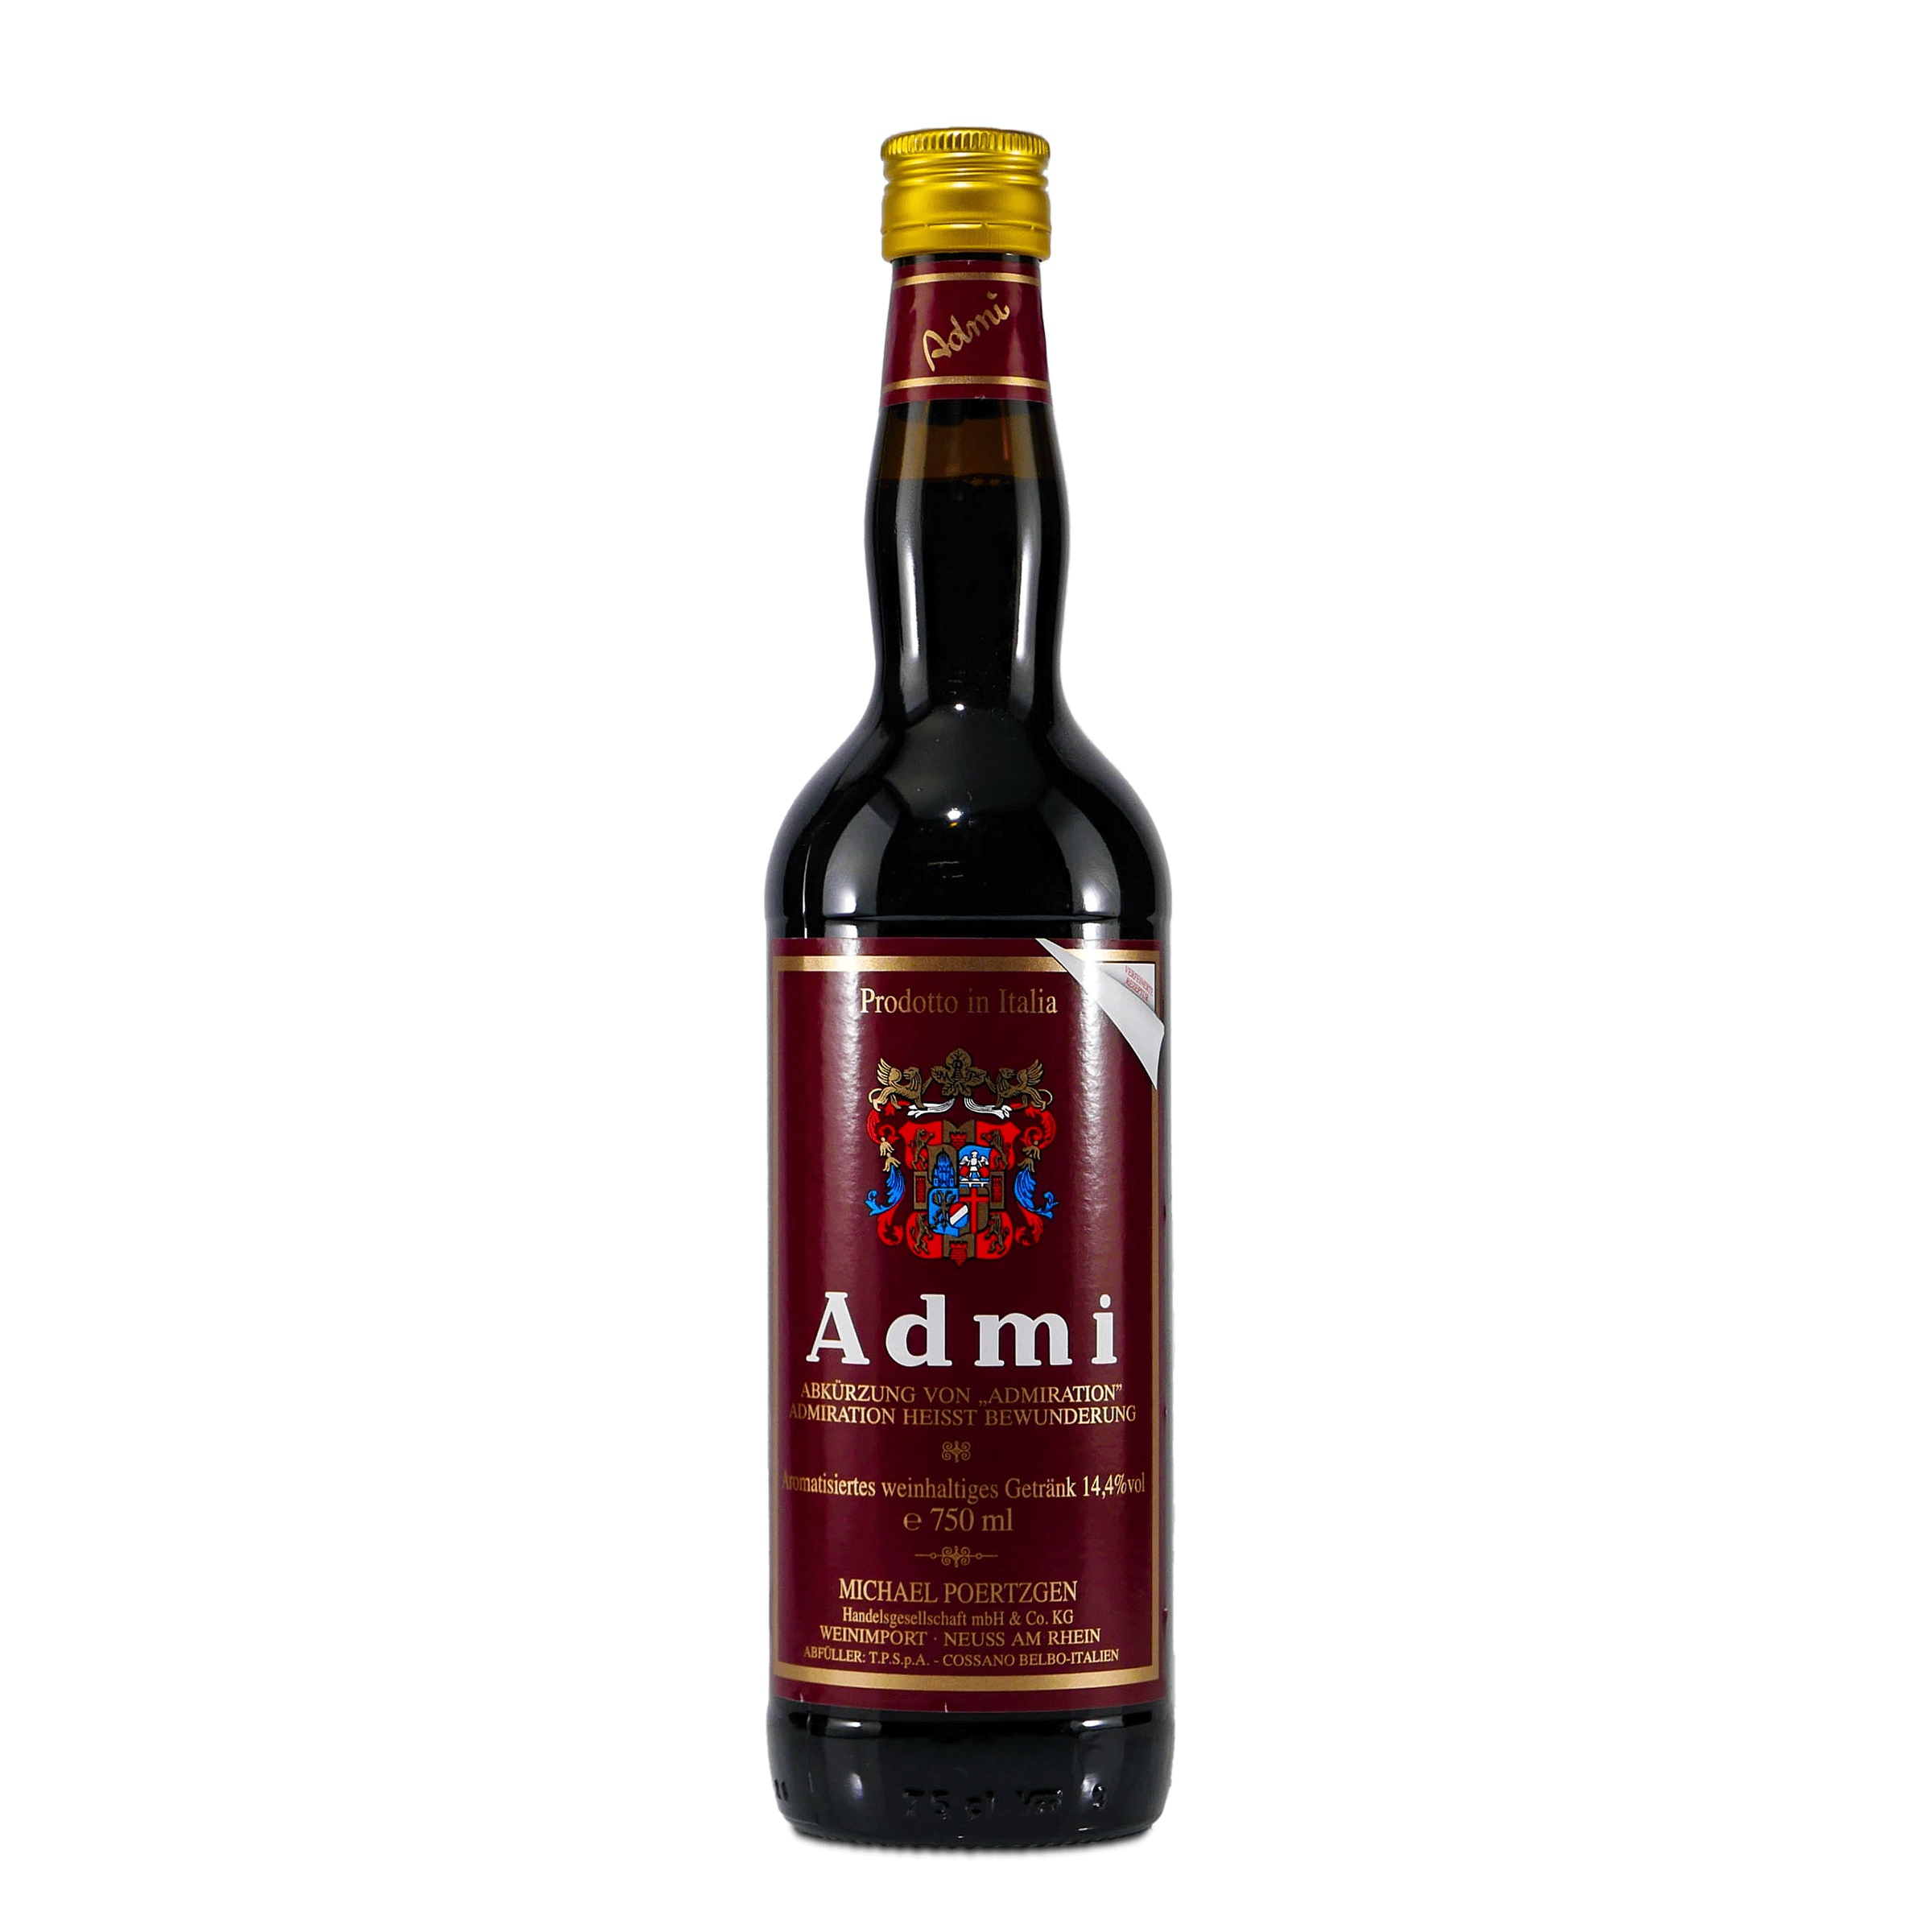 Admi Aromatisiertes weinhaltiges Getränk